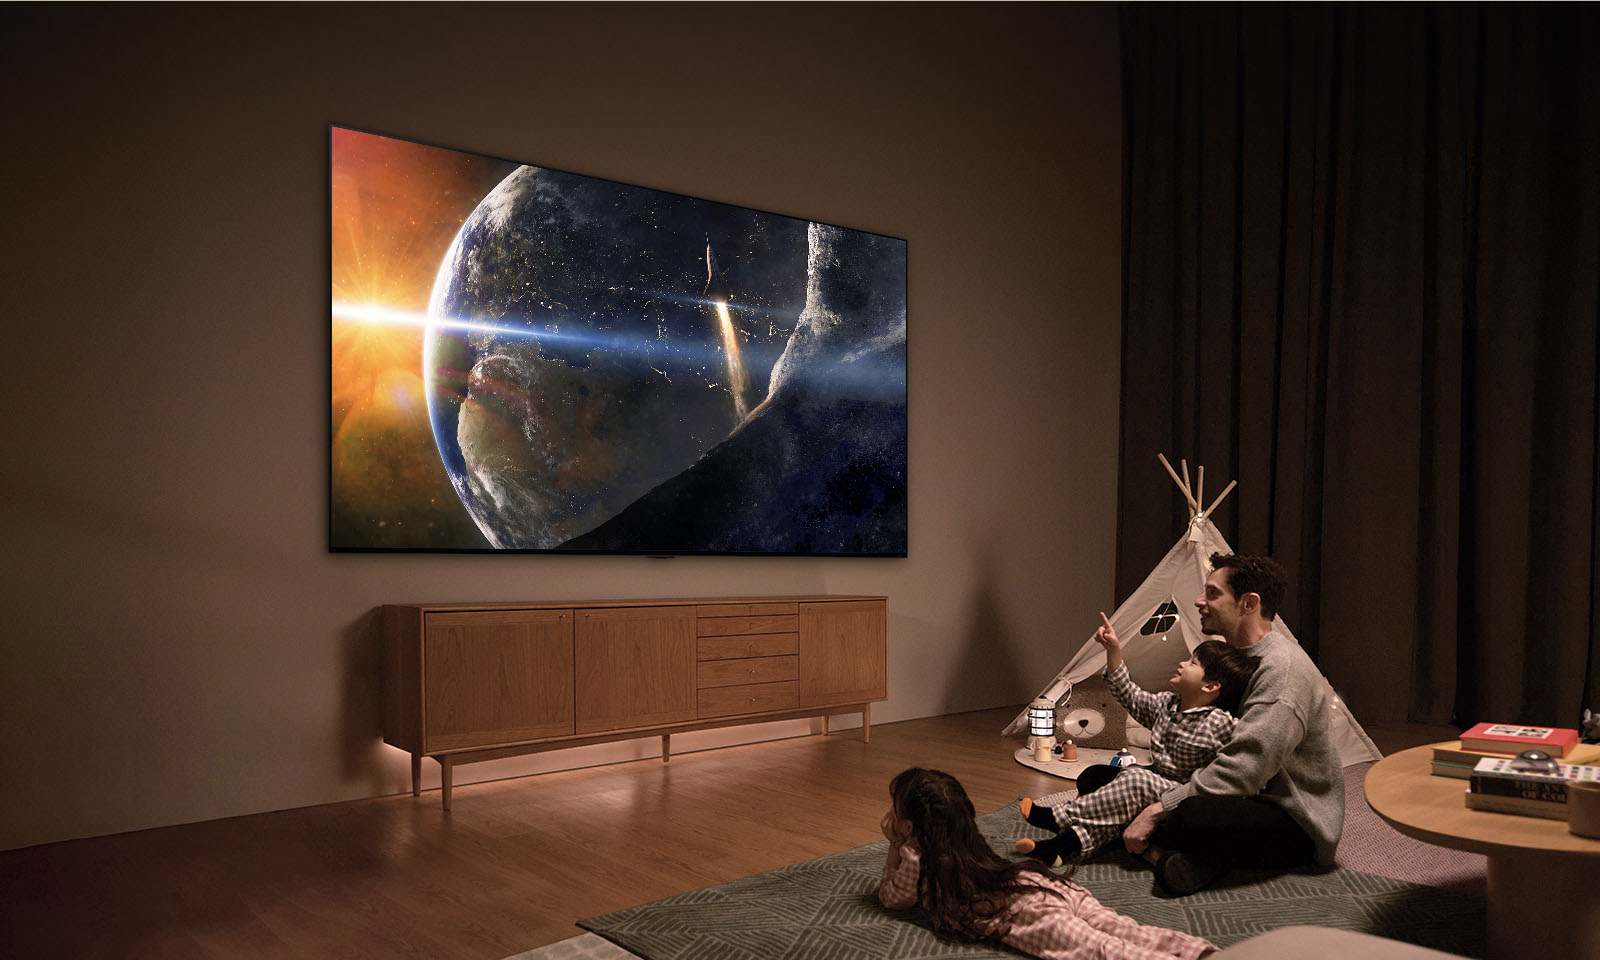 一家人坐在光線昏暗的客廳地板上，旁邊是一張小桌子，大家抬頭看著牆上安裝的 LG TV，電視螢幕上顯示著太空中的地球。